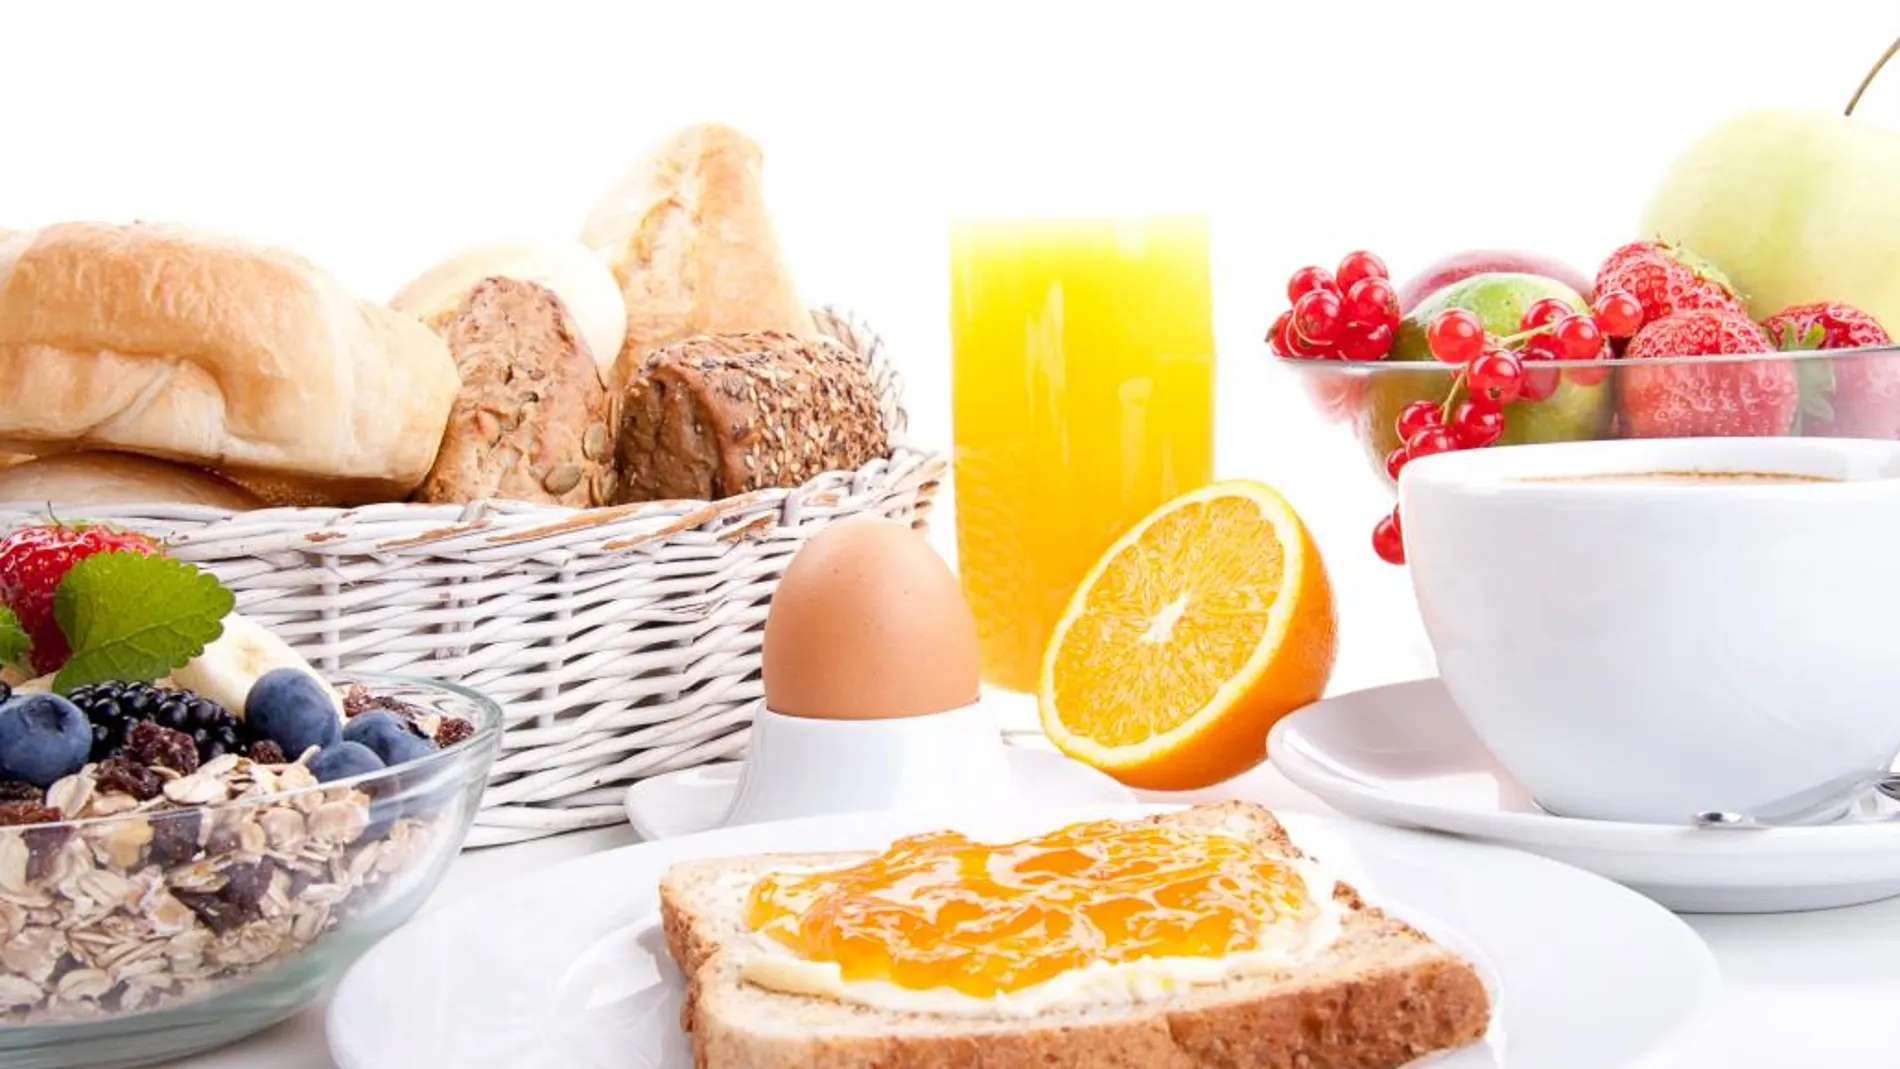 Un desayuno «pobre» duplica el riesgo cardiovascular